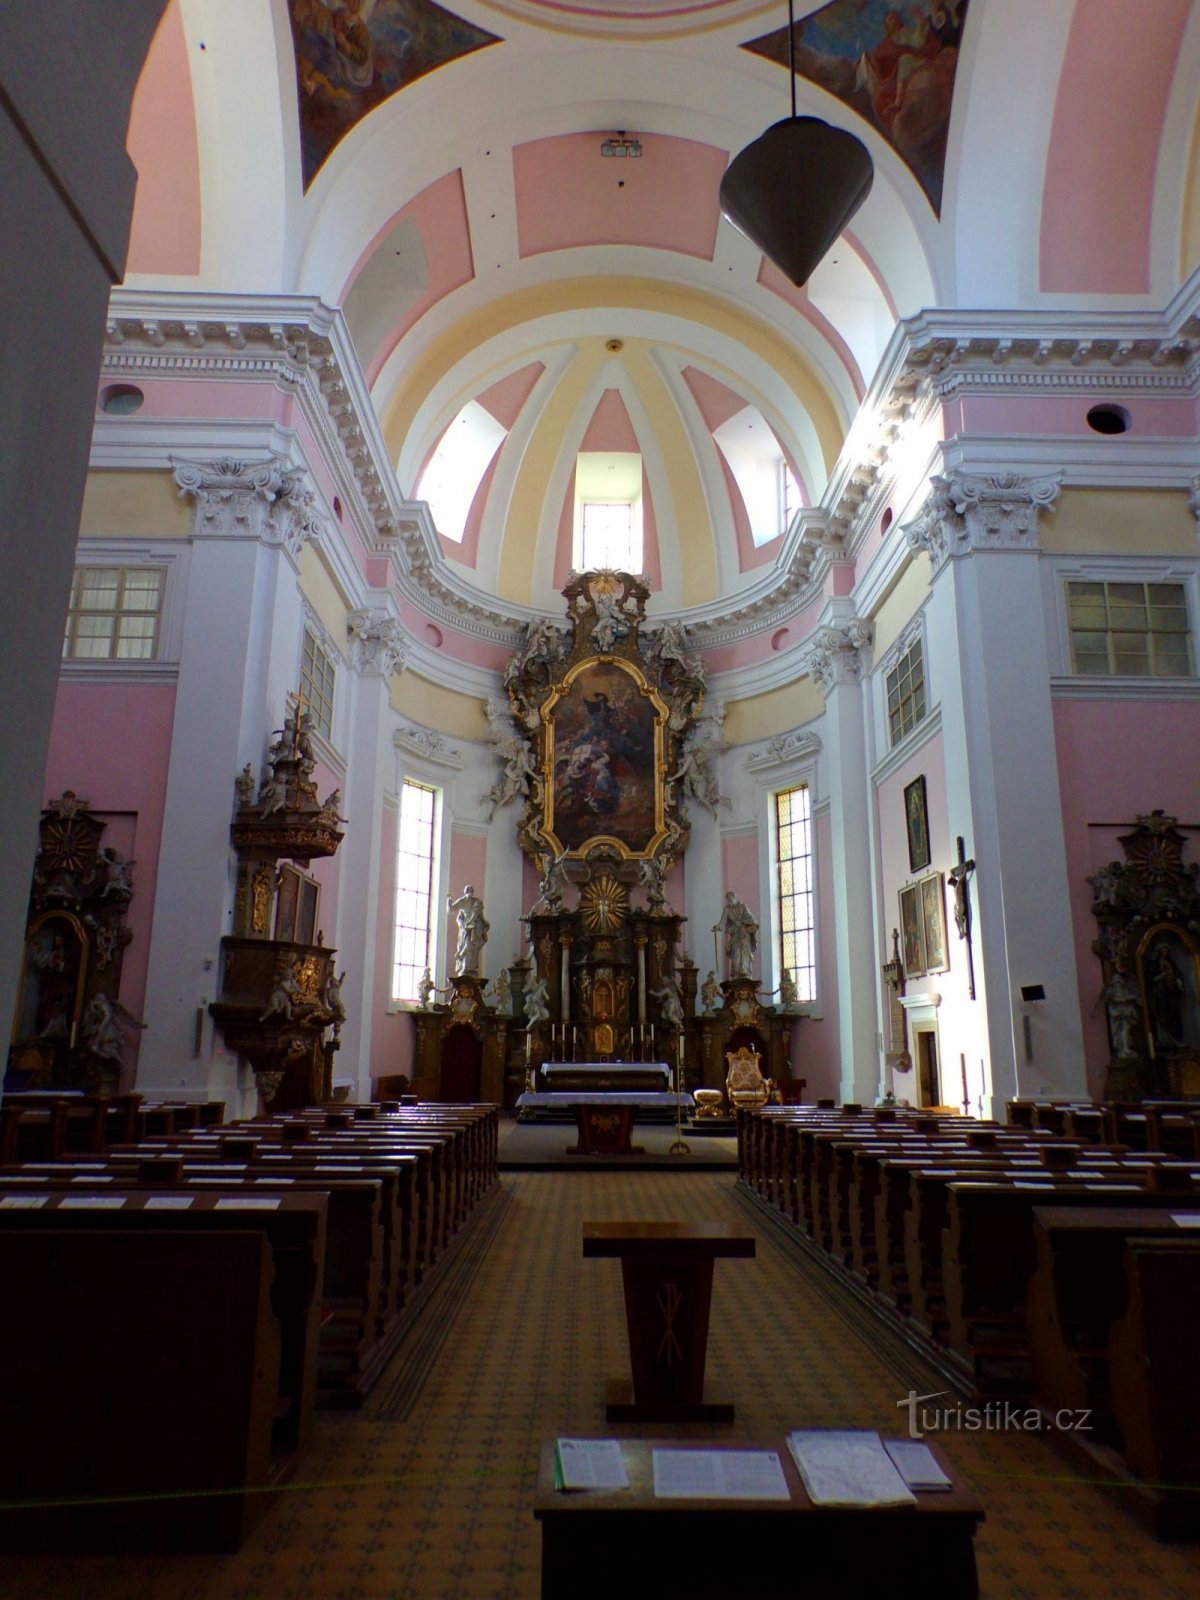 Iglesia de San Santiago el Mayor, apóstol (Jičín, 3.3.2022/XNUMX/XNUMX)